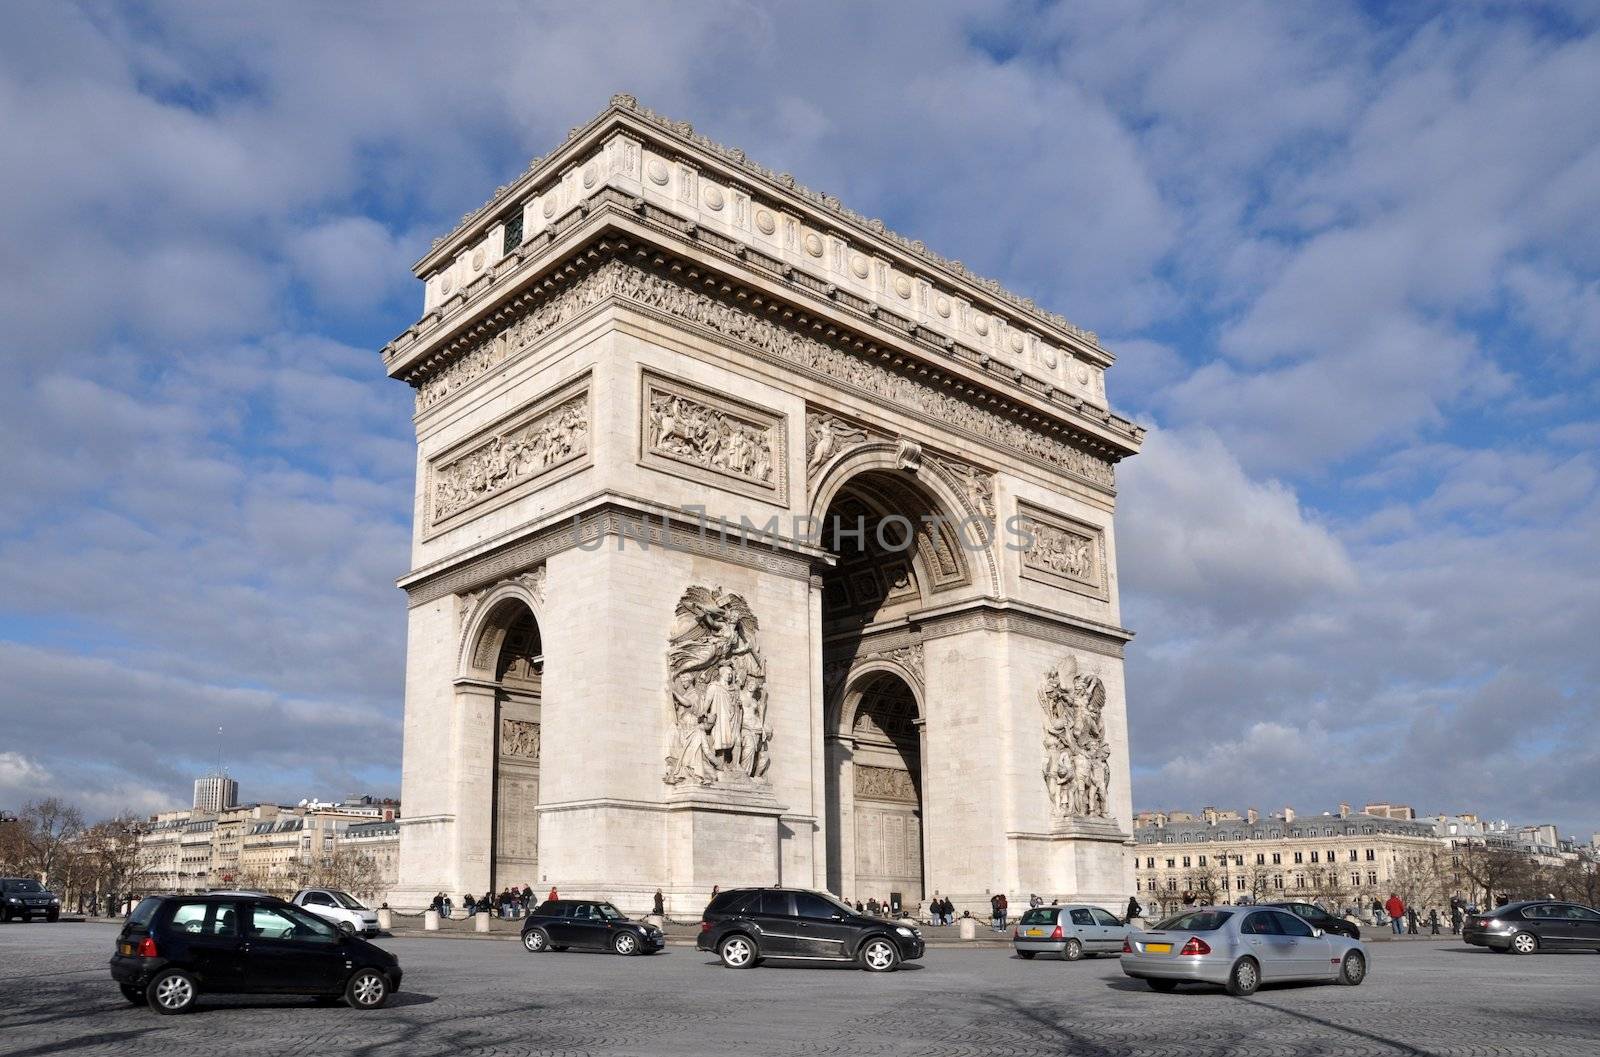 The Arc de triomphe in Paris by dutourdumonde